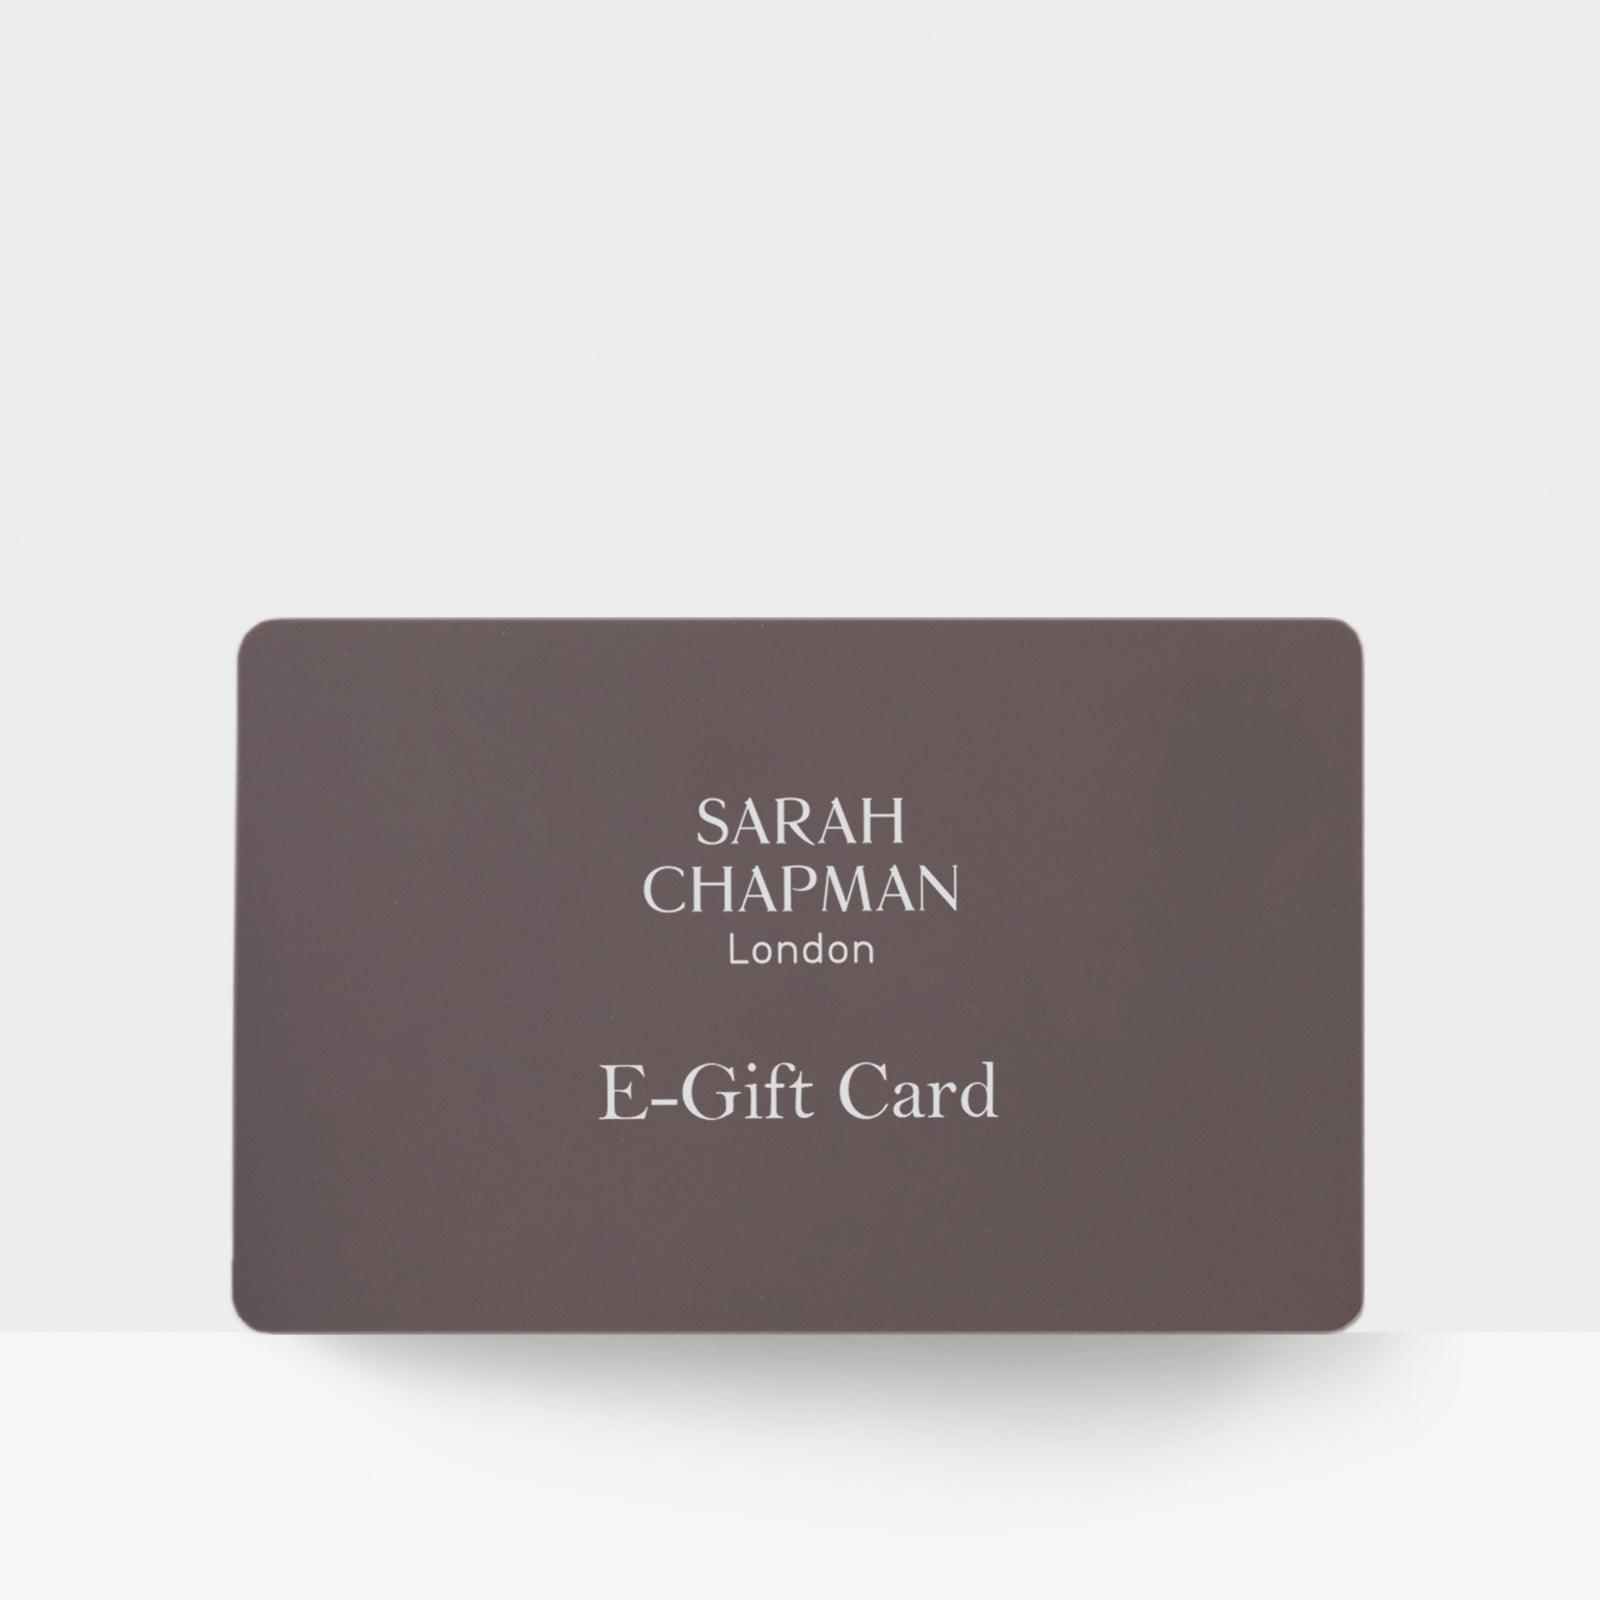 E-Gift Card - Sarah Chapman 